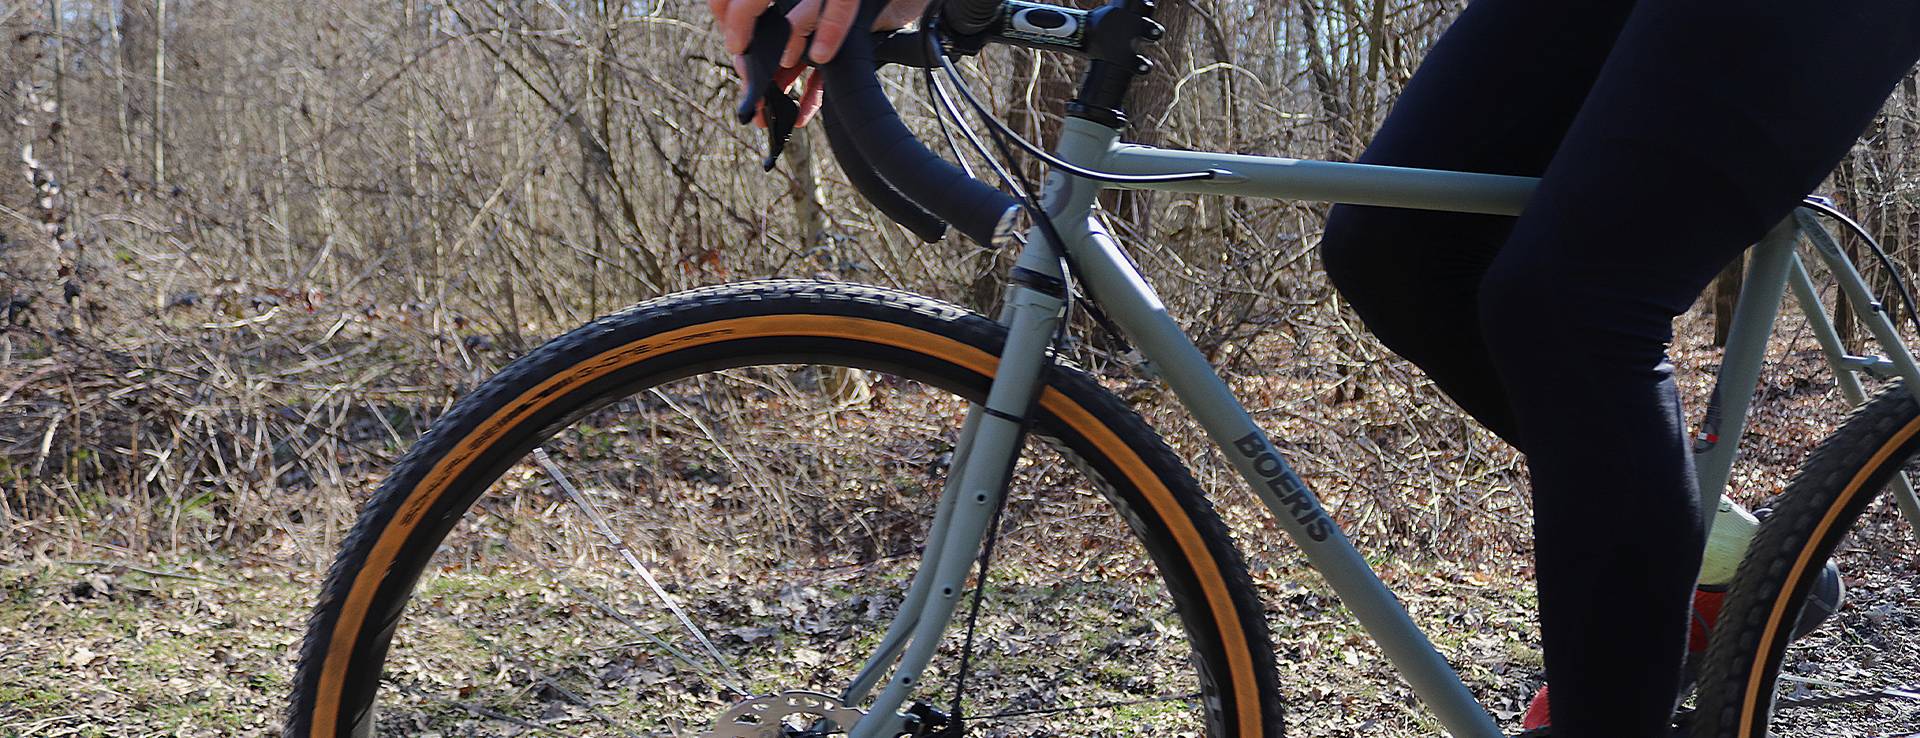 dettaglio di una Gravel Bike serie x-performancegrigia fotografata in un bosco con ciclista con pantaloni neri